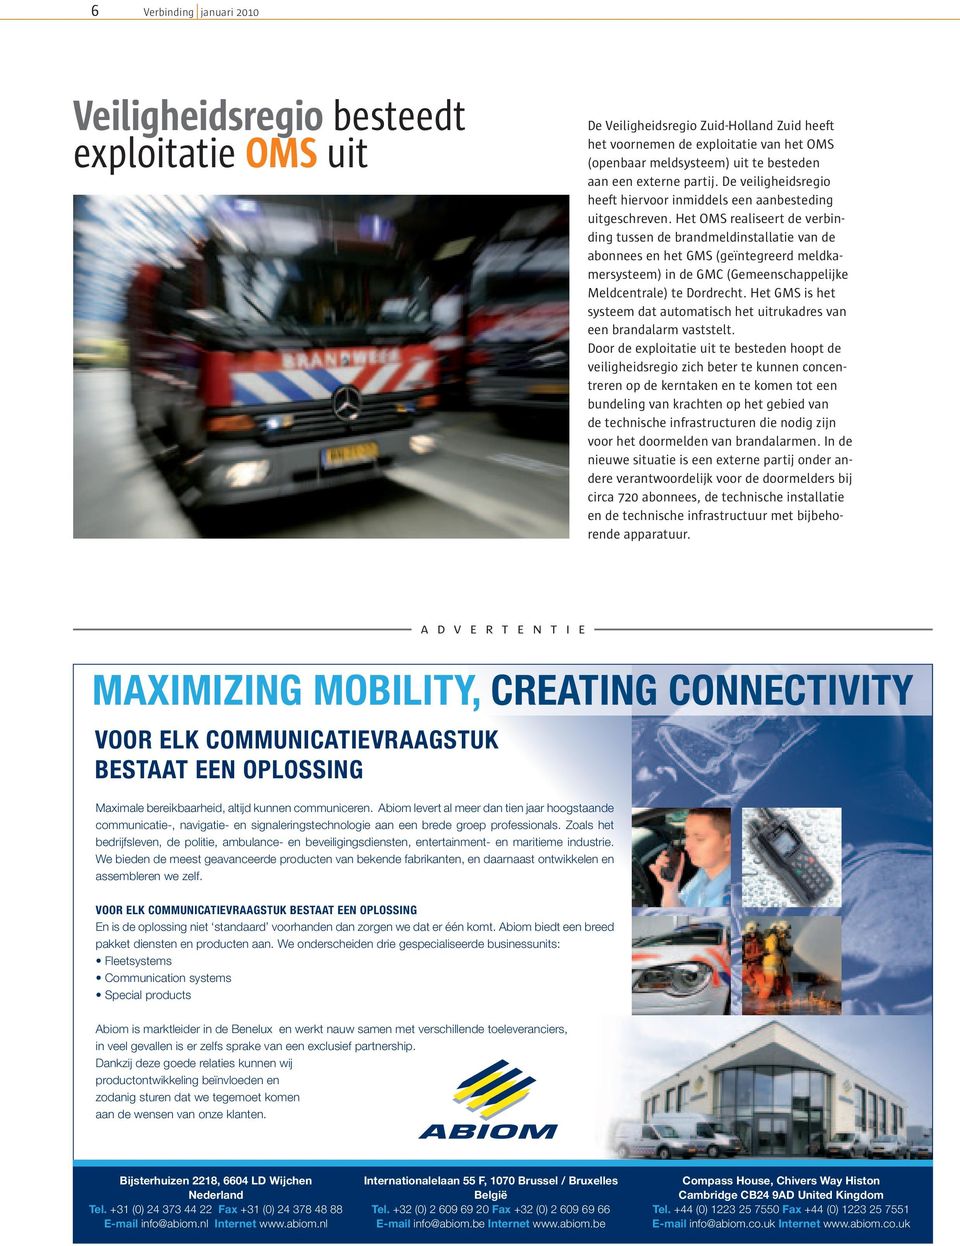 Het OMS realiseert de verbinding tussen de brandmeldinstallatie van de abonnees en het GMS (geïntegreerd meldkamersysteem) in de GMC (Gemeenschappelijke Meldcentrale) te Dordrecht.